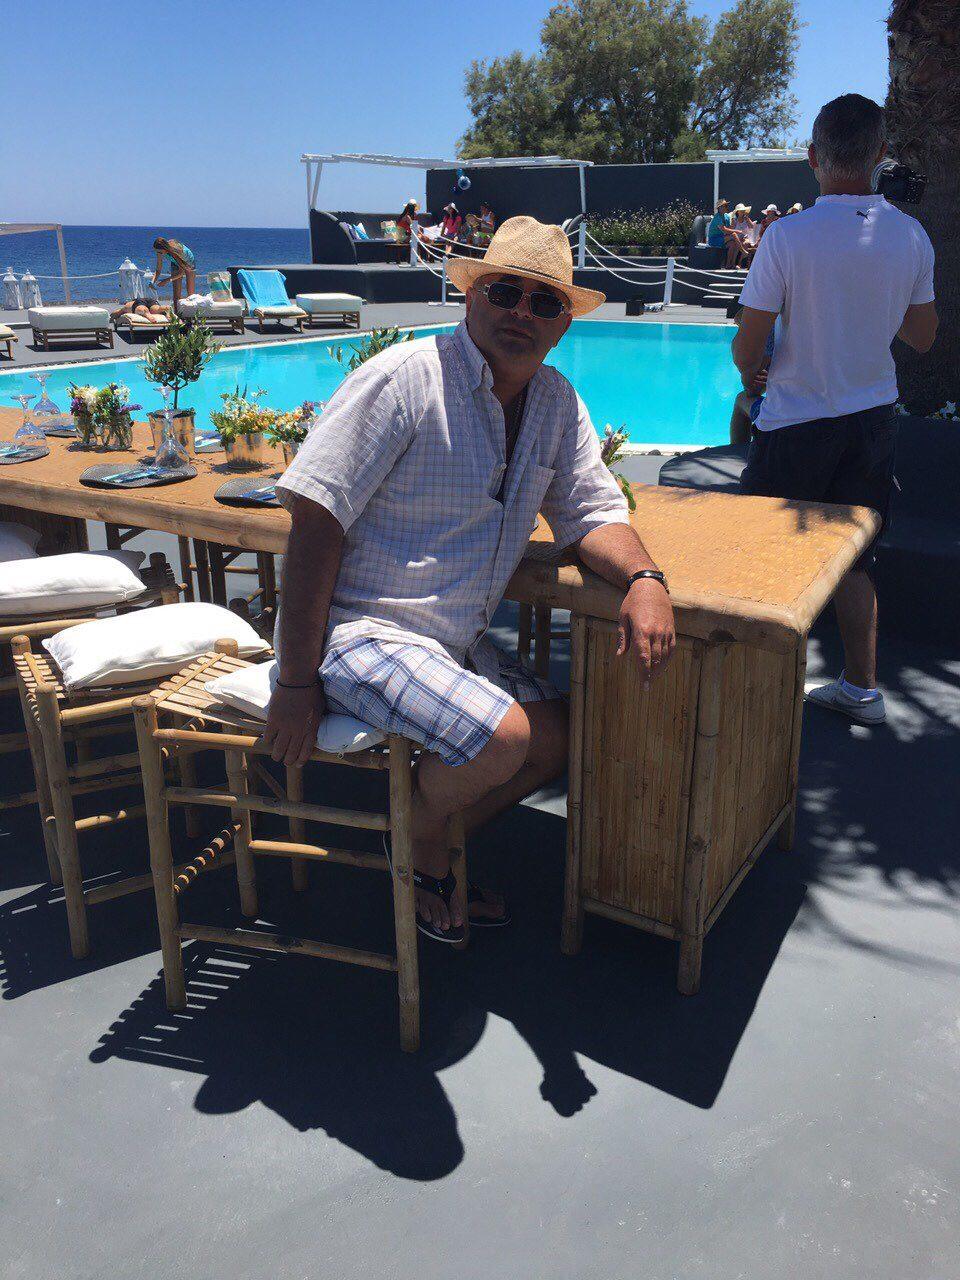 Tatăl Xeniei Deli a pozat alături de ginere. Noi fotografii de pe insula Santorini